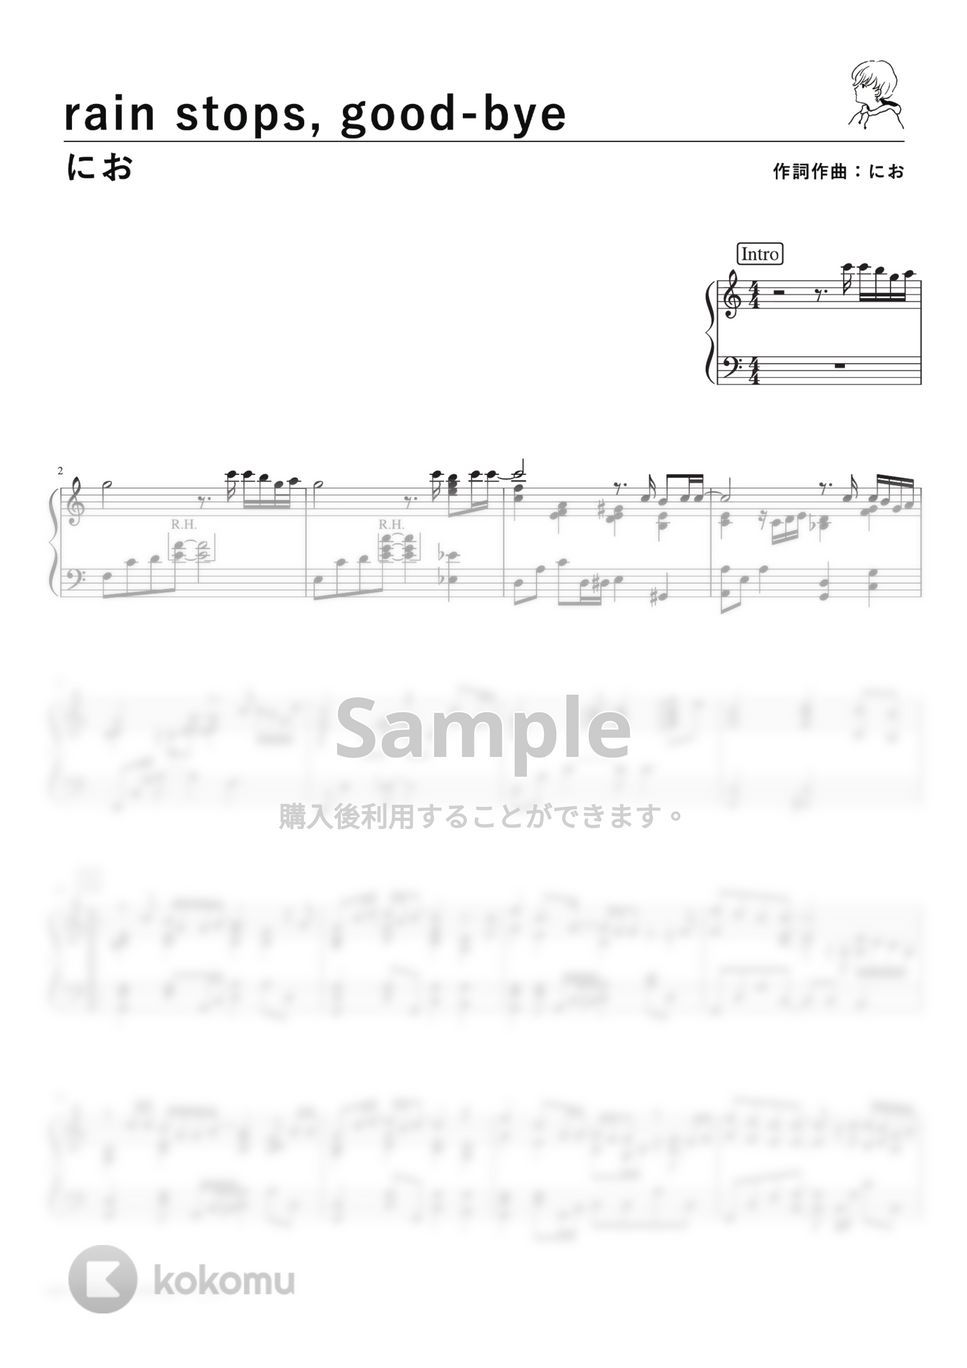 におP - rain stops, good-bye (PianoSolo) by 深根 / Fukane